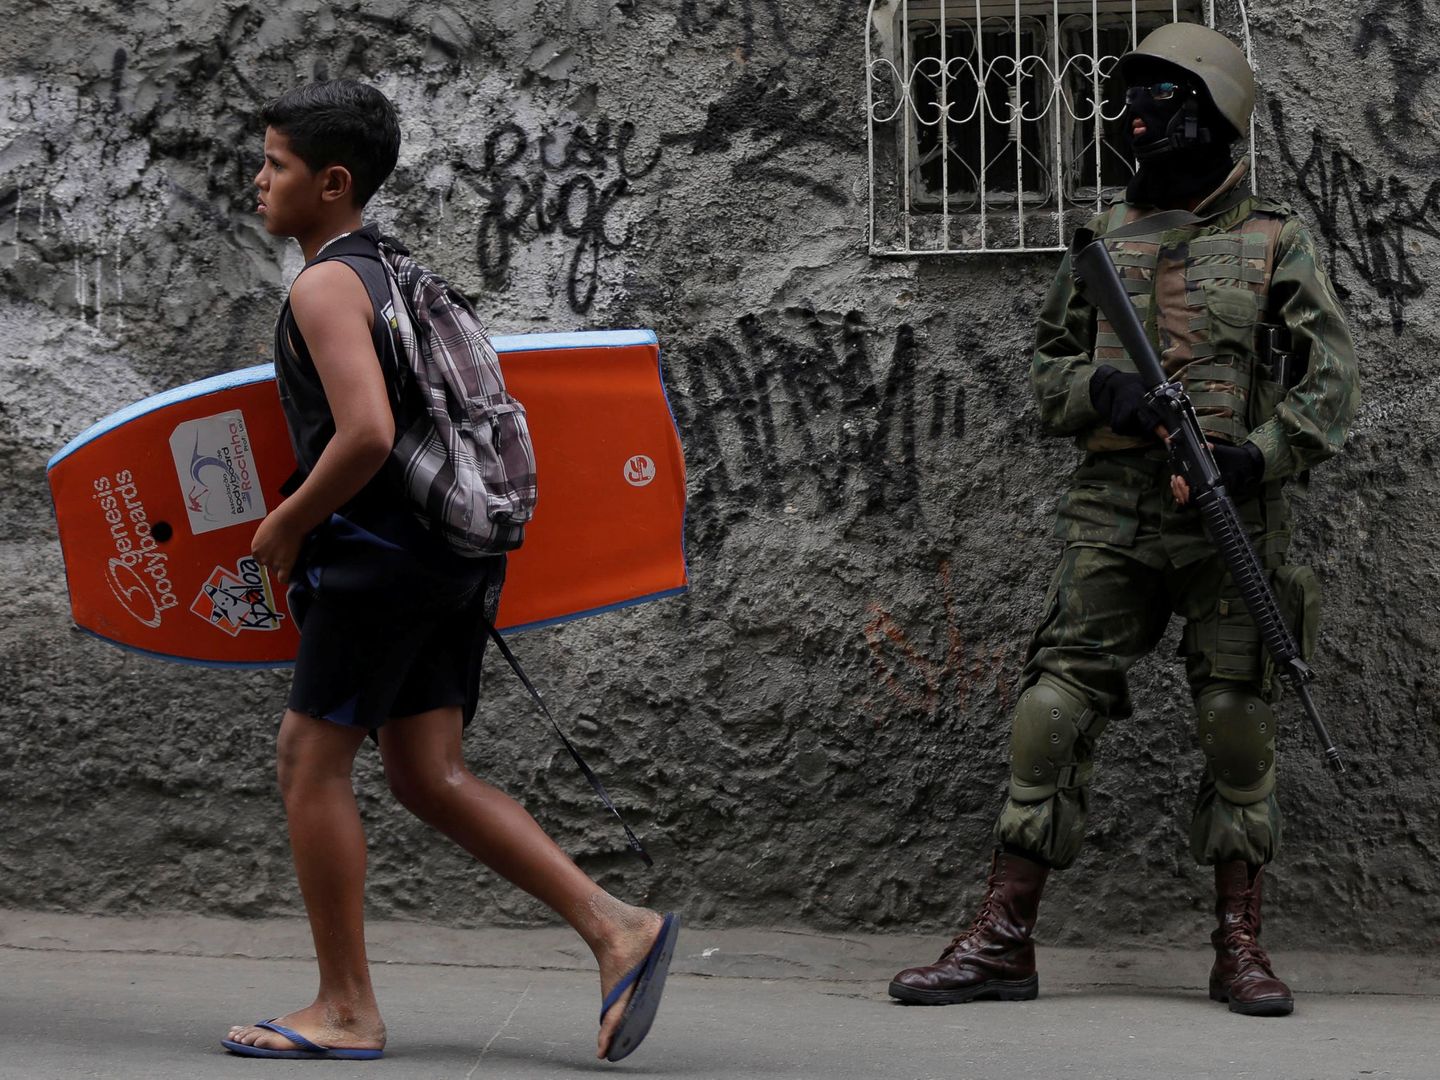 Un joven con una tabla de body-board pasa delante de un soldado desplegado en la favela de Rocinha durante una operación antidroga, en septiembre de 2017. (Reuters)